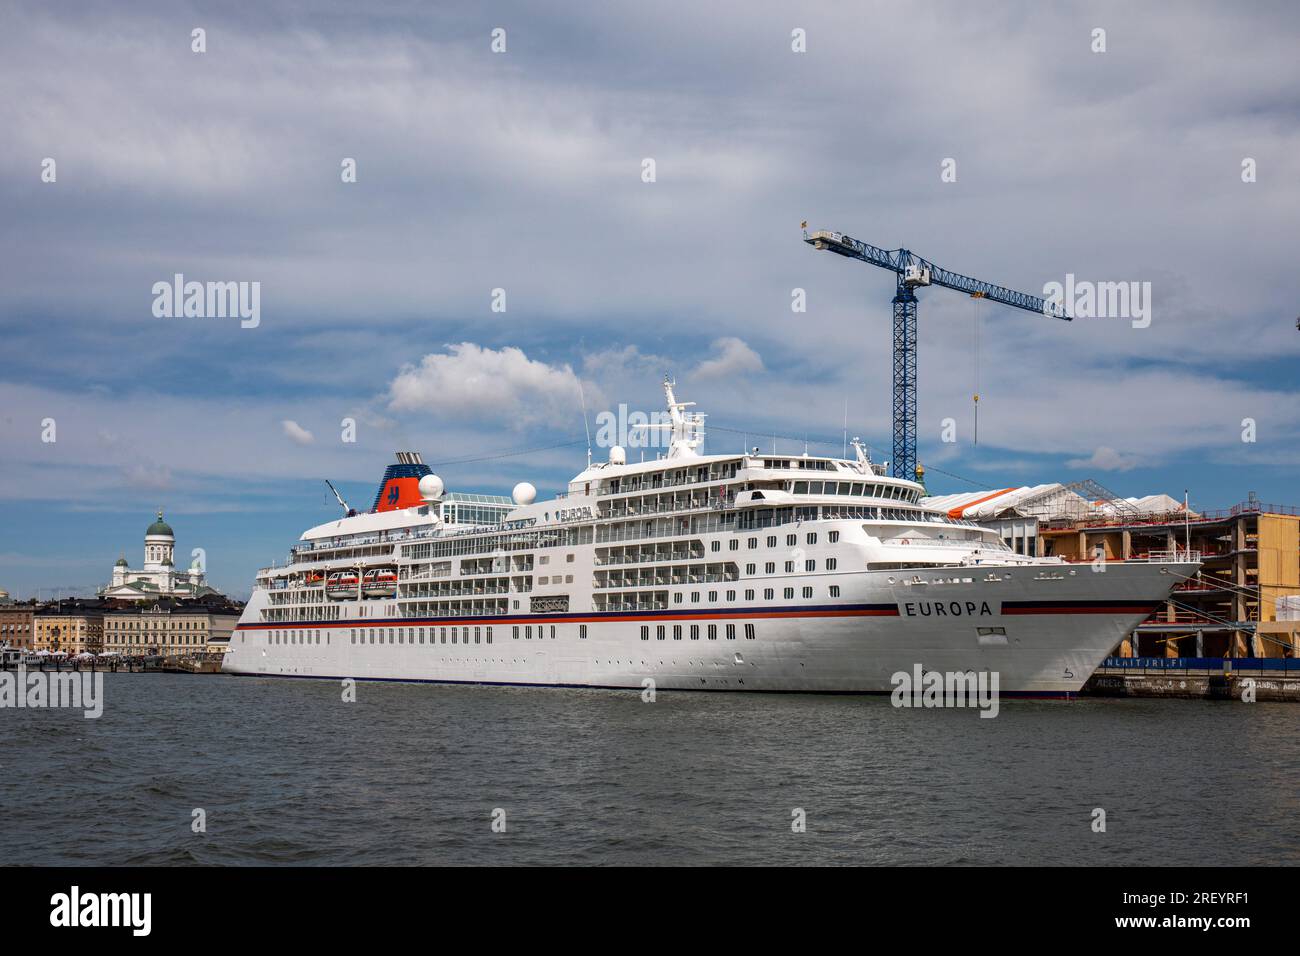 M/S Europa de Hapag-Lloyd Cruises, autrefois décrit comme le meilleur bateau de croisière de luxe au monde, amarré au quai Katajanokka à Helsinki, Finlande Banque D'Images